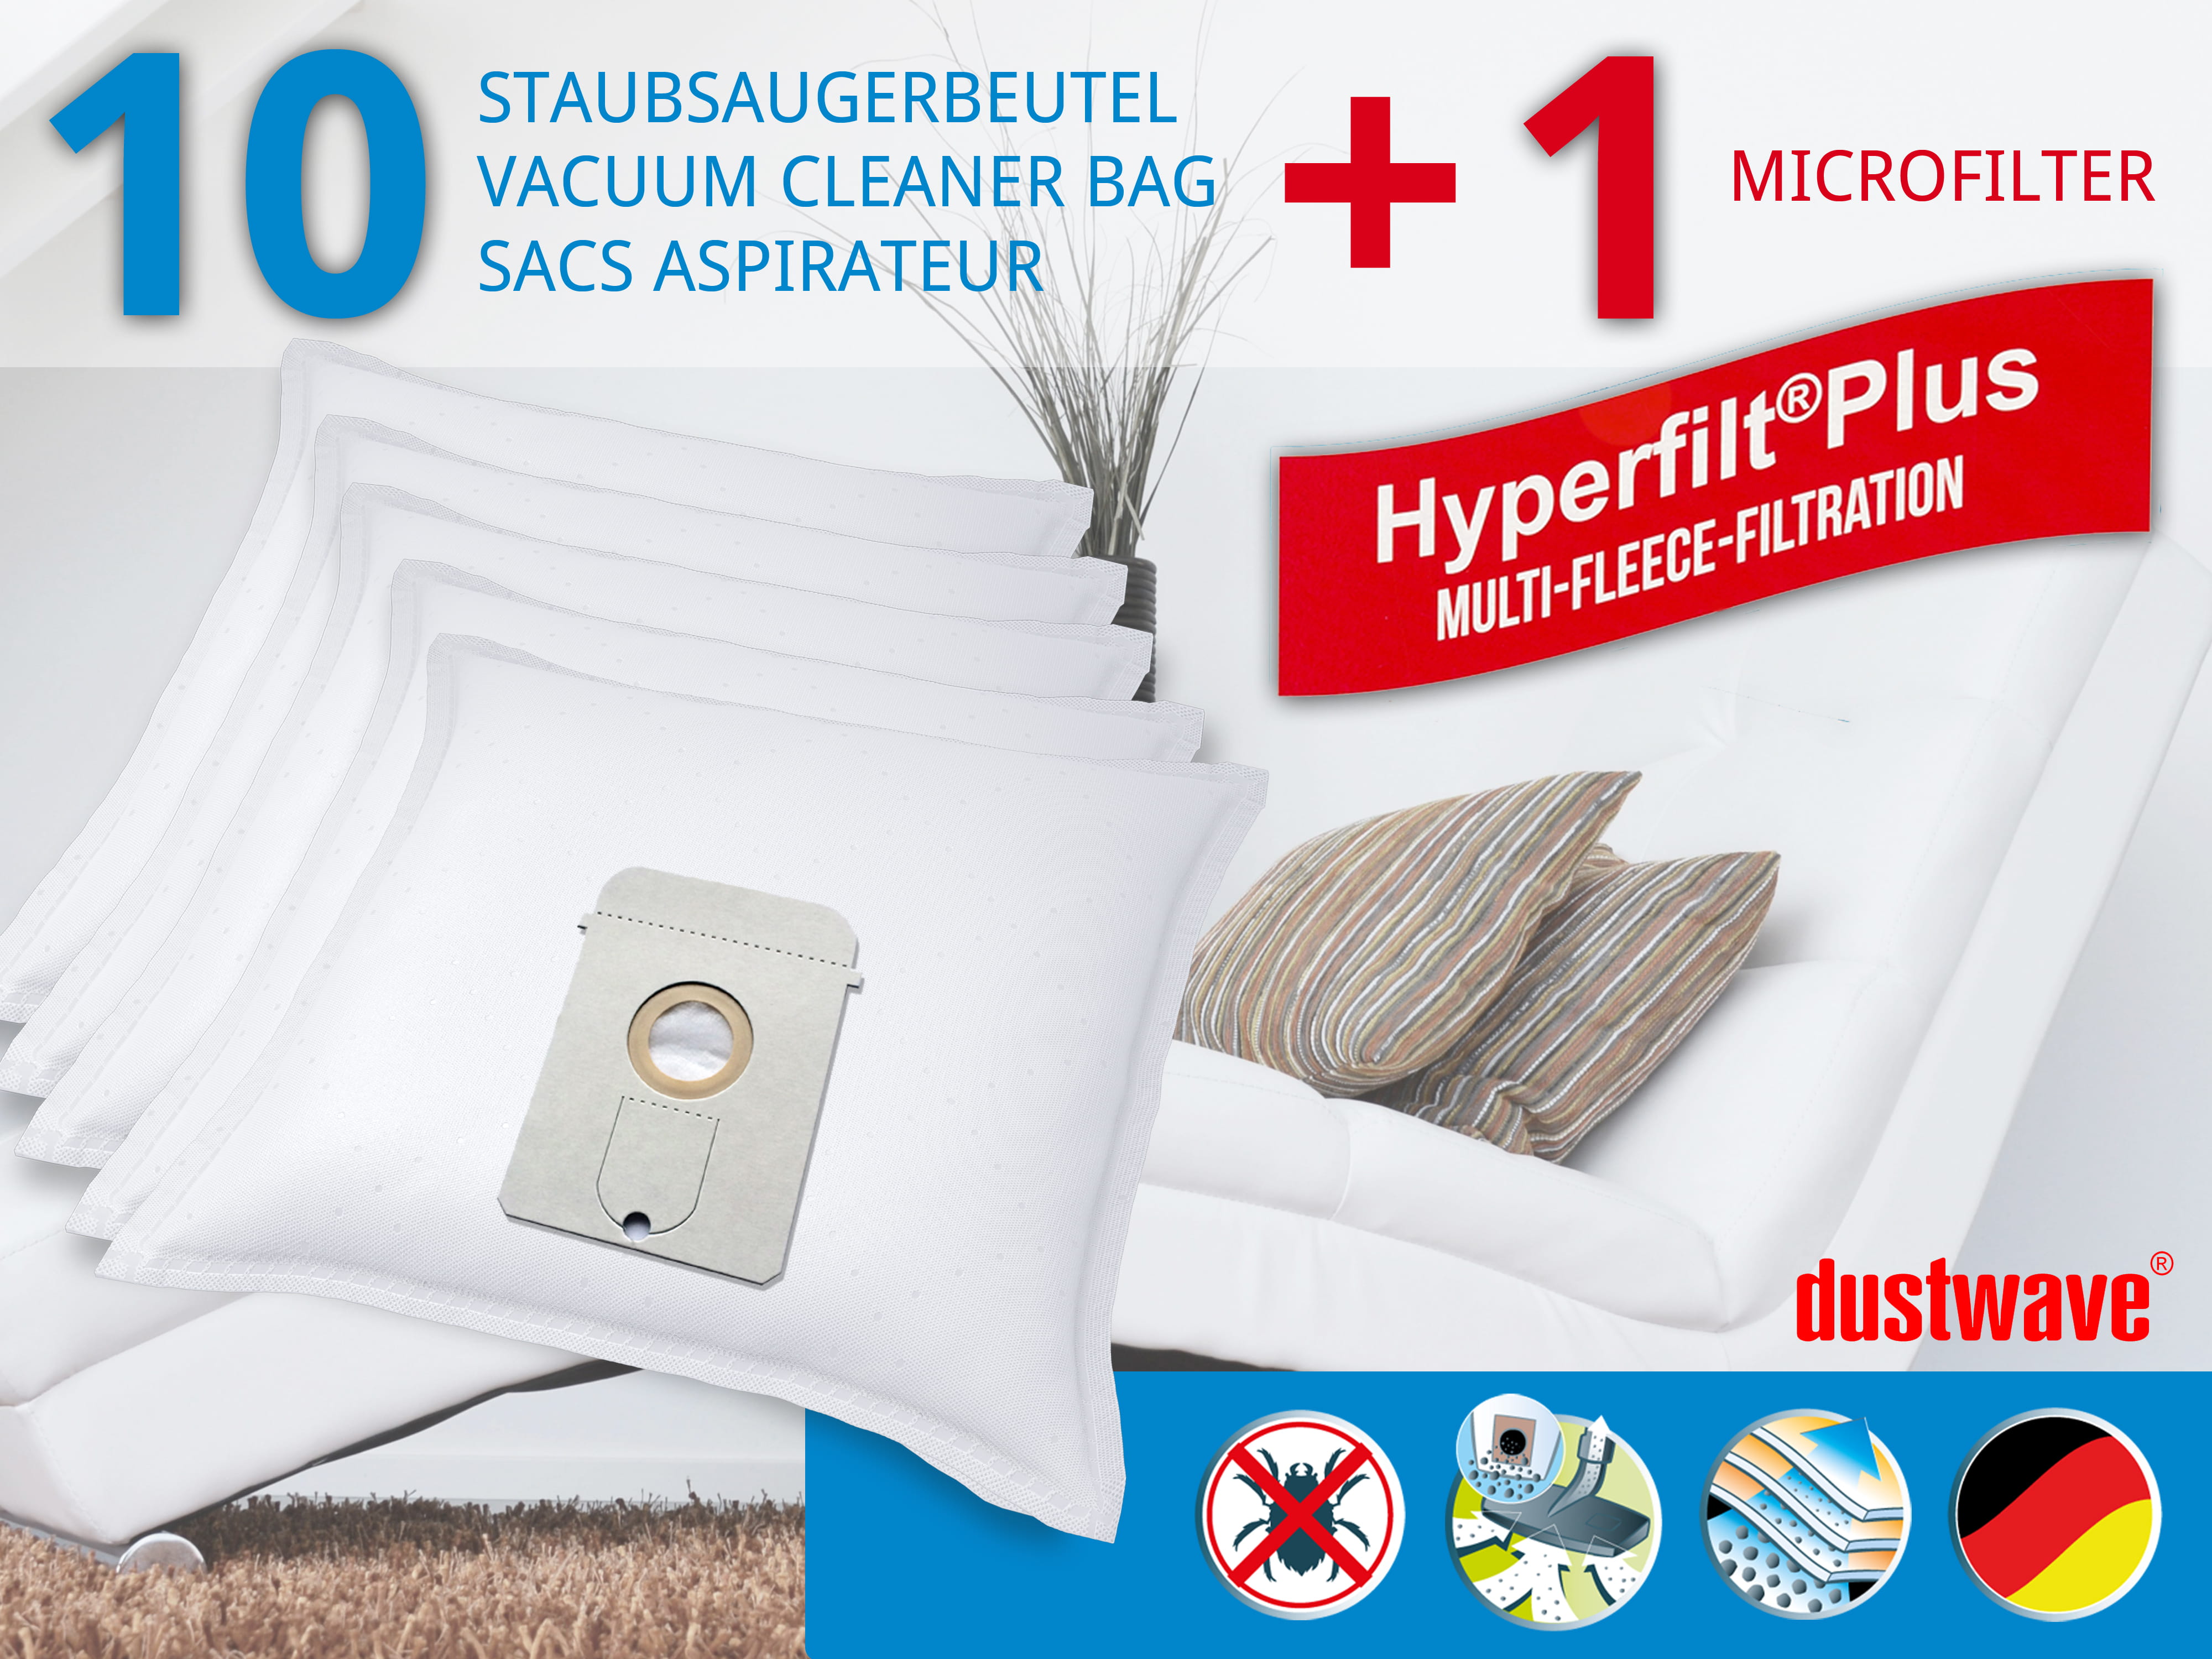 Dustwave® 10 Staubsaugerbeutel für AEG Vampyr 7200 Electronic - hocheffizient, mehrlagiges Mikrovlies mit Hygieneverschluss - Made in Germany